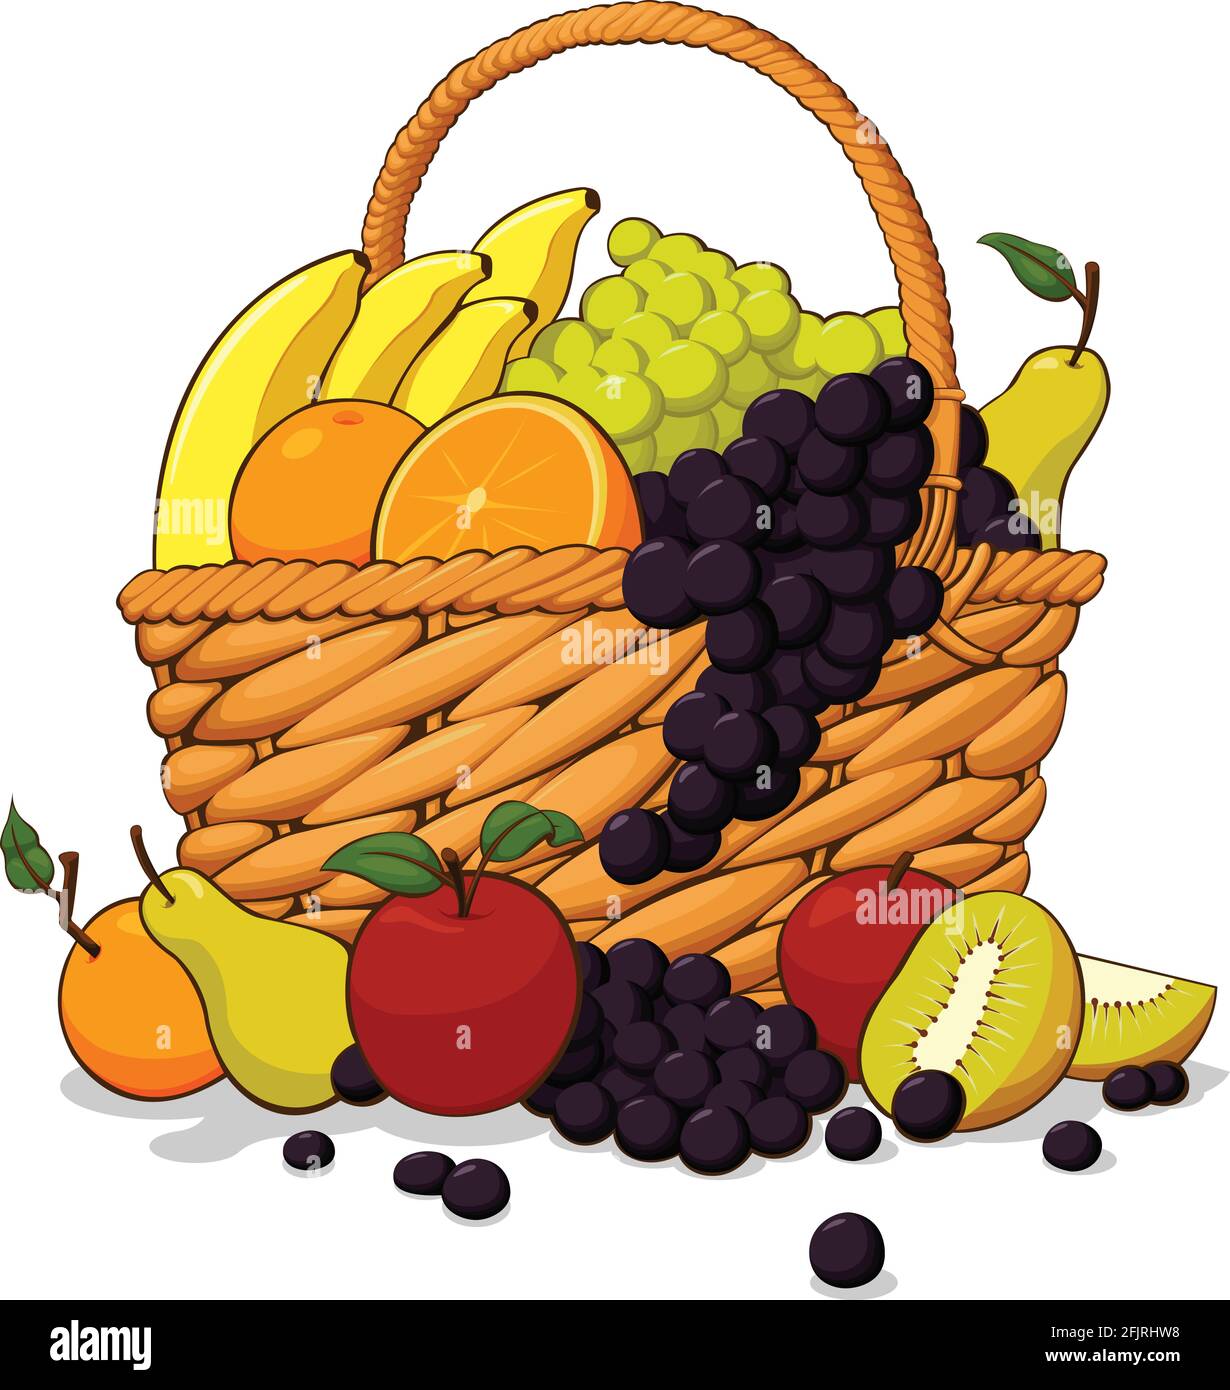 Enjoy 115+ fruit basket drawing super hot